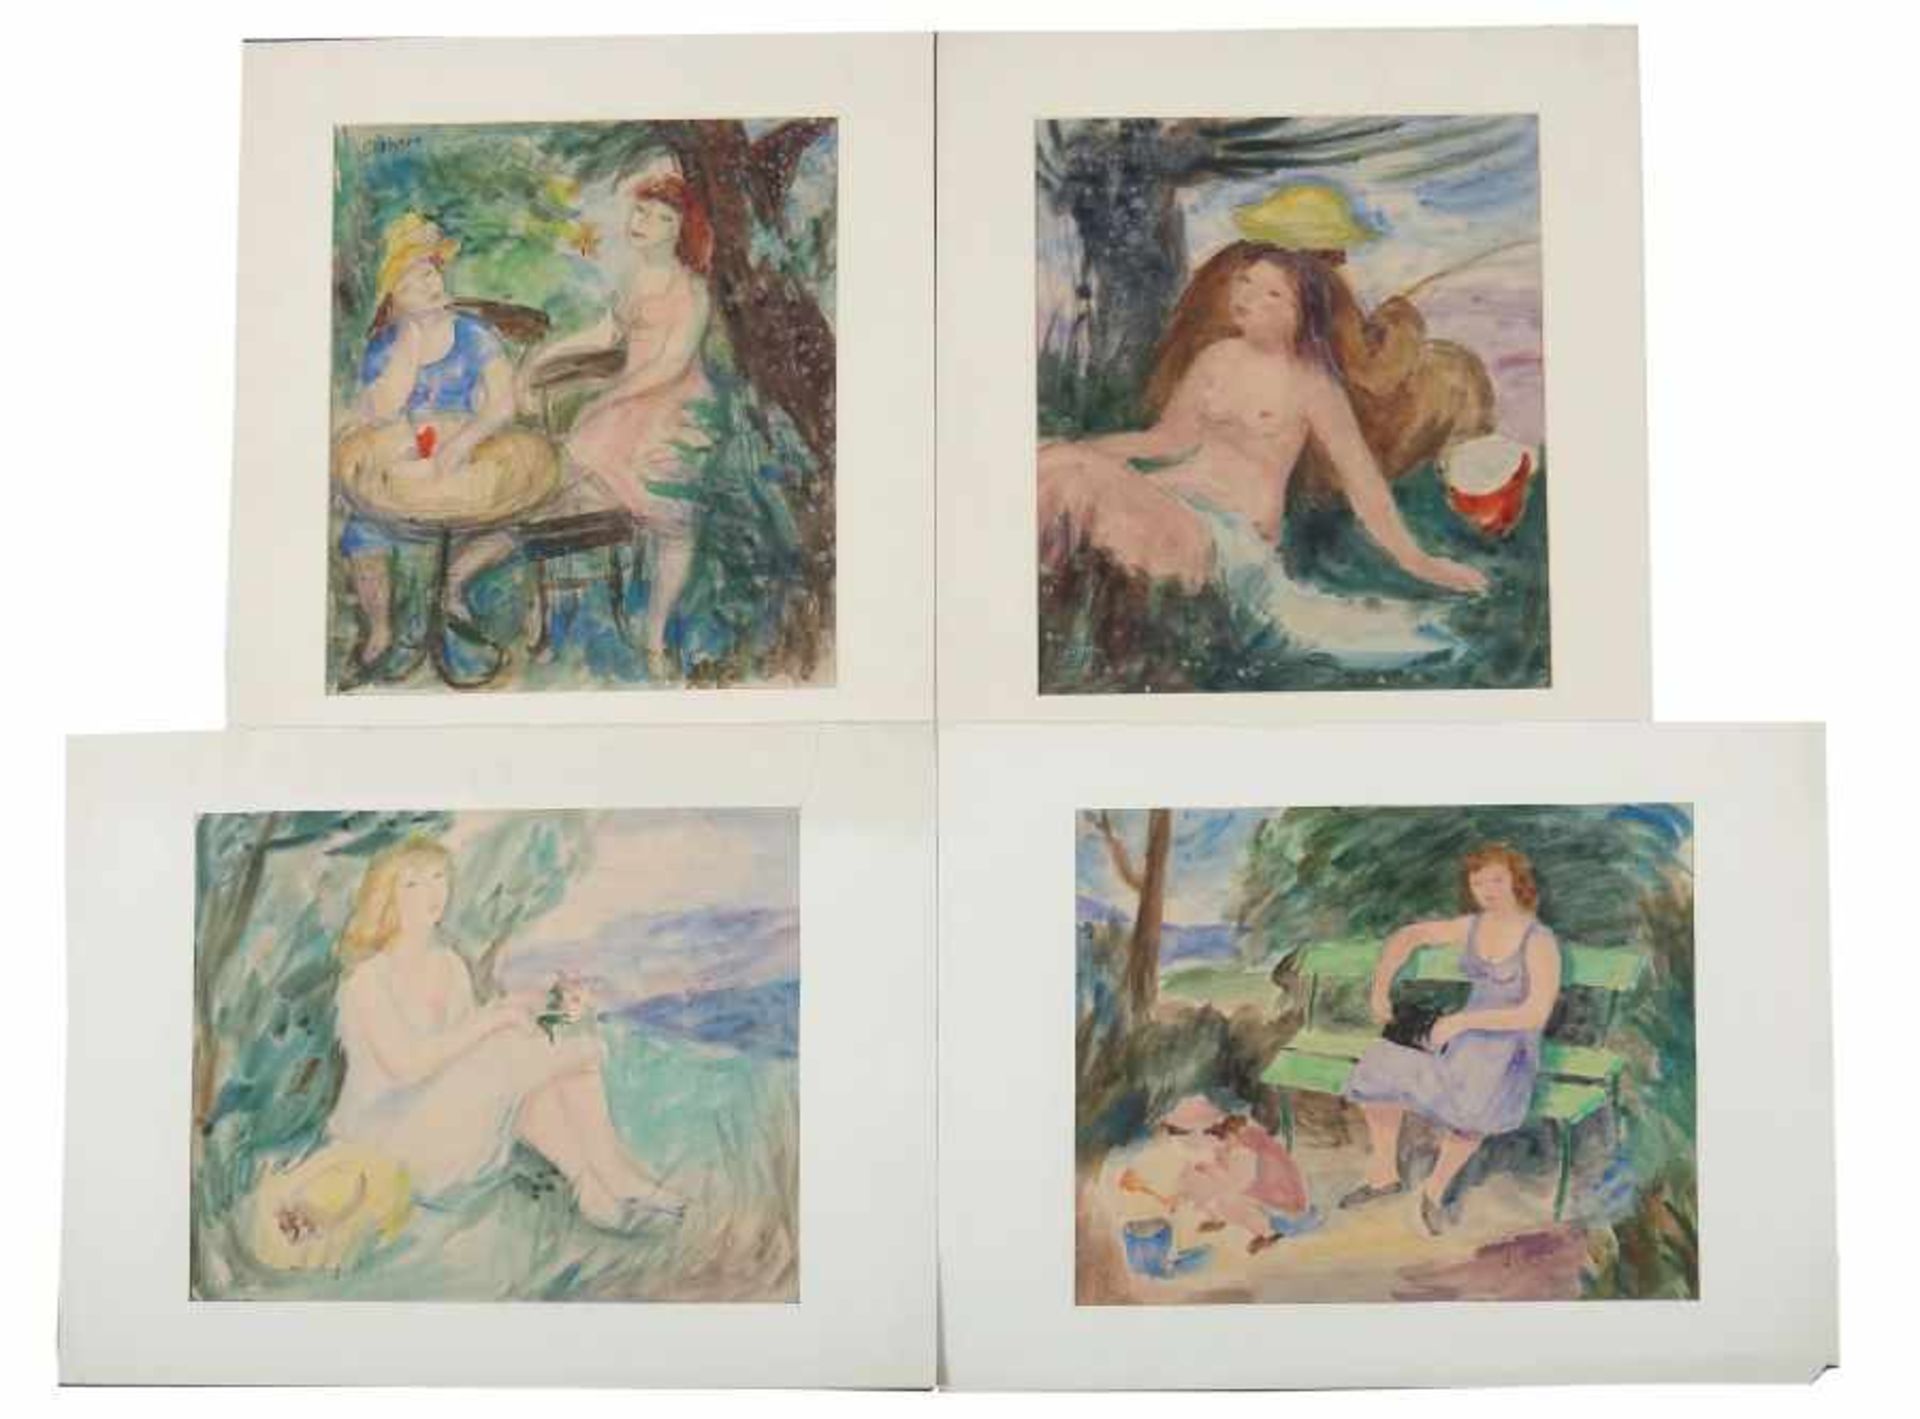 Lichter, Alfred 1917 - 2012, deutscher Maler und Bildhauer. 4x "Damen", 1x "Frauenakt sitzend",